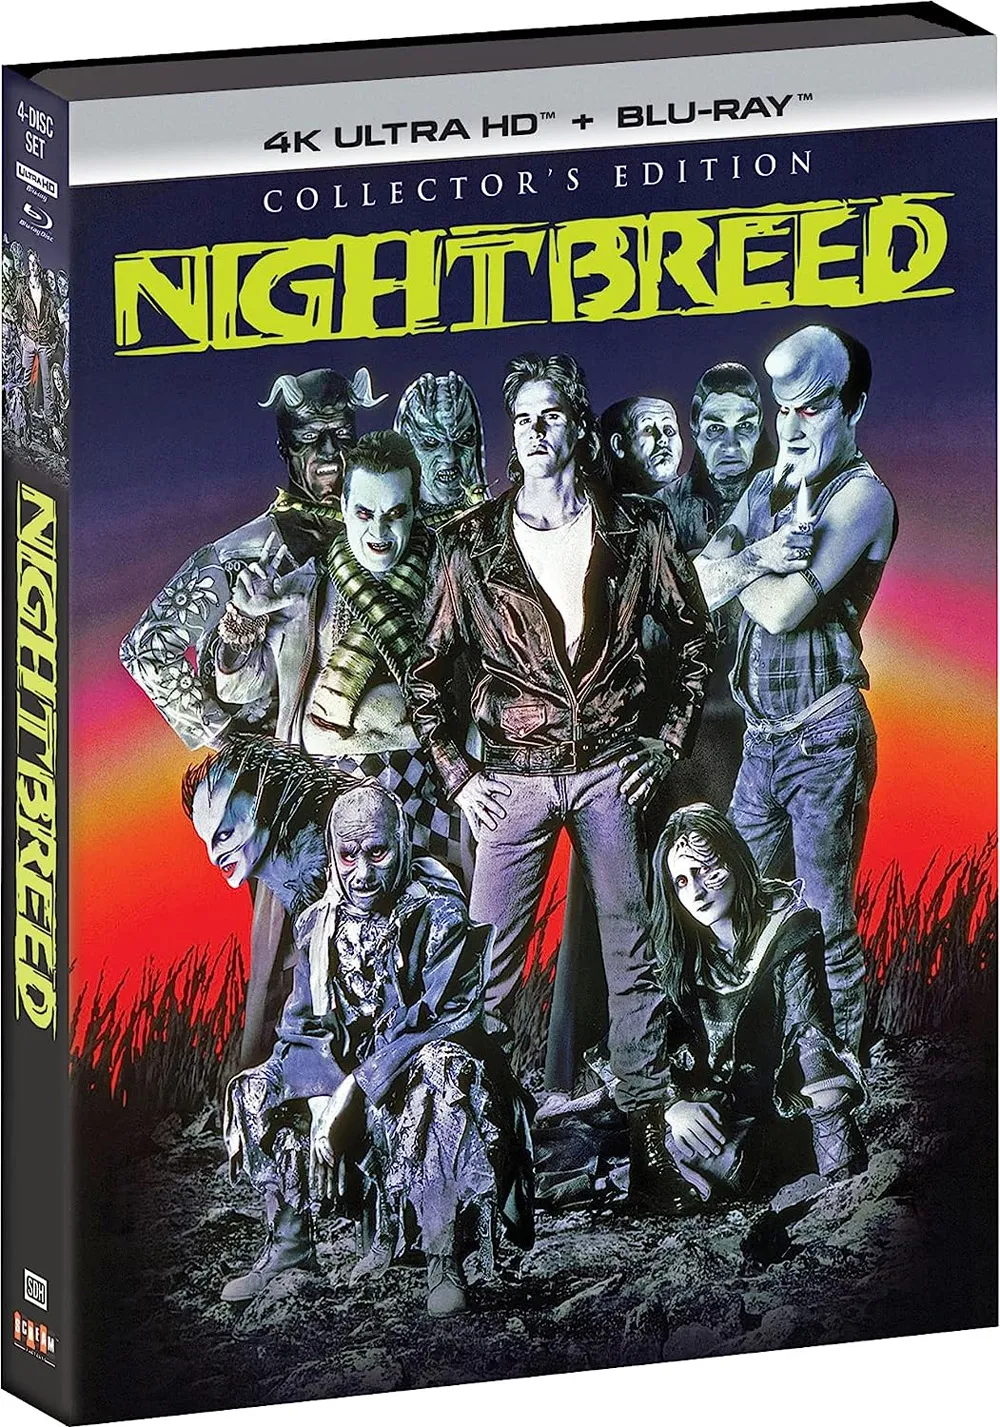 Nightbreed 4k release date